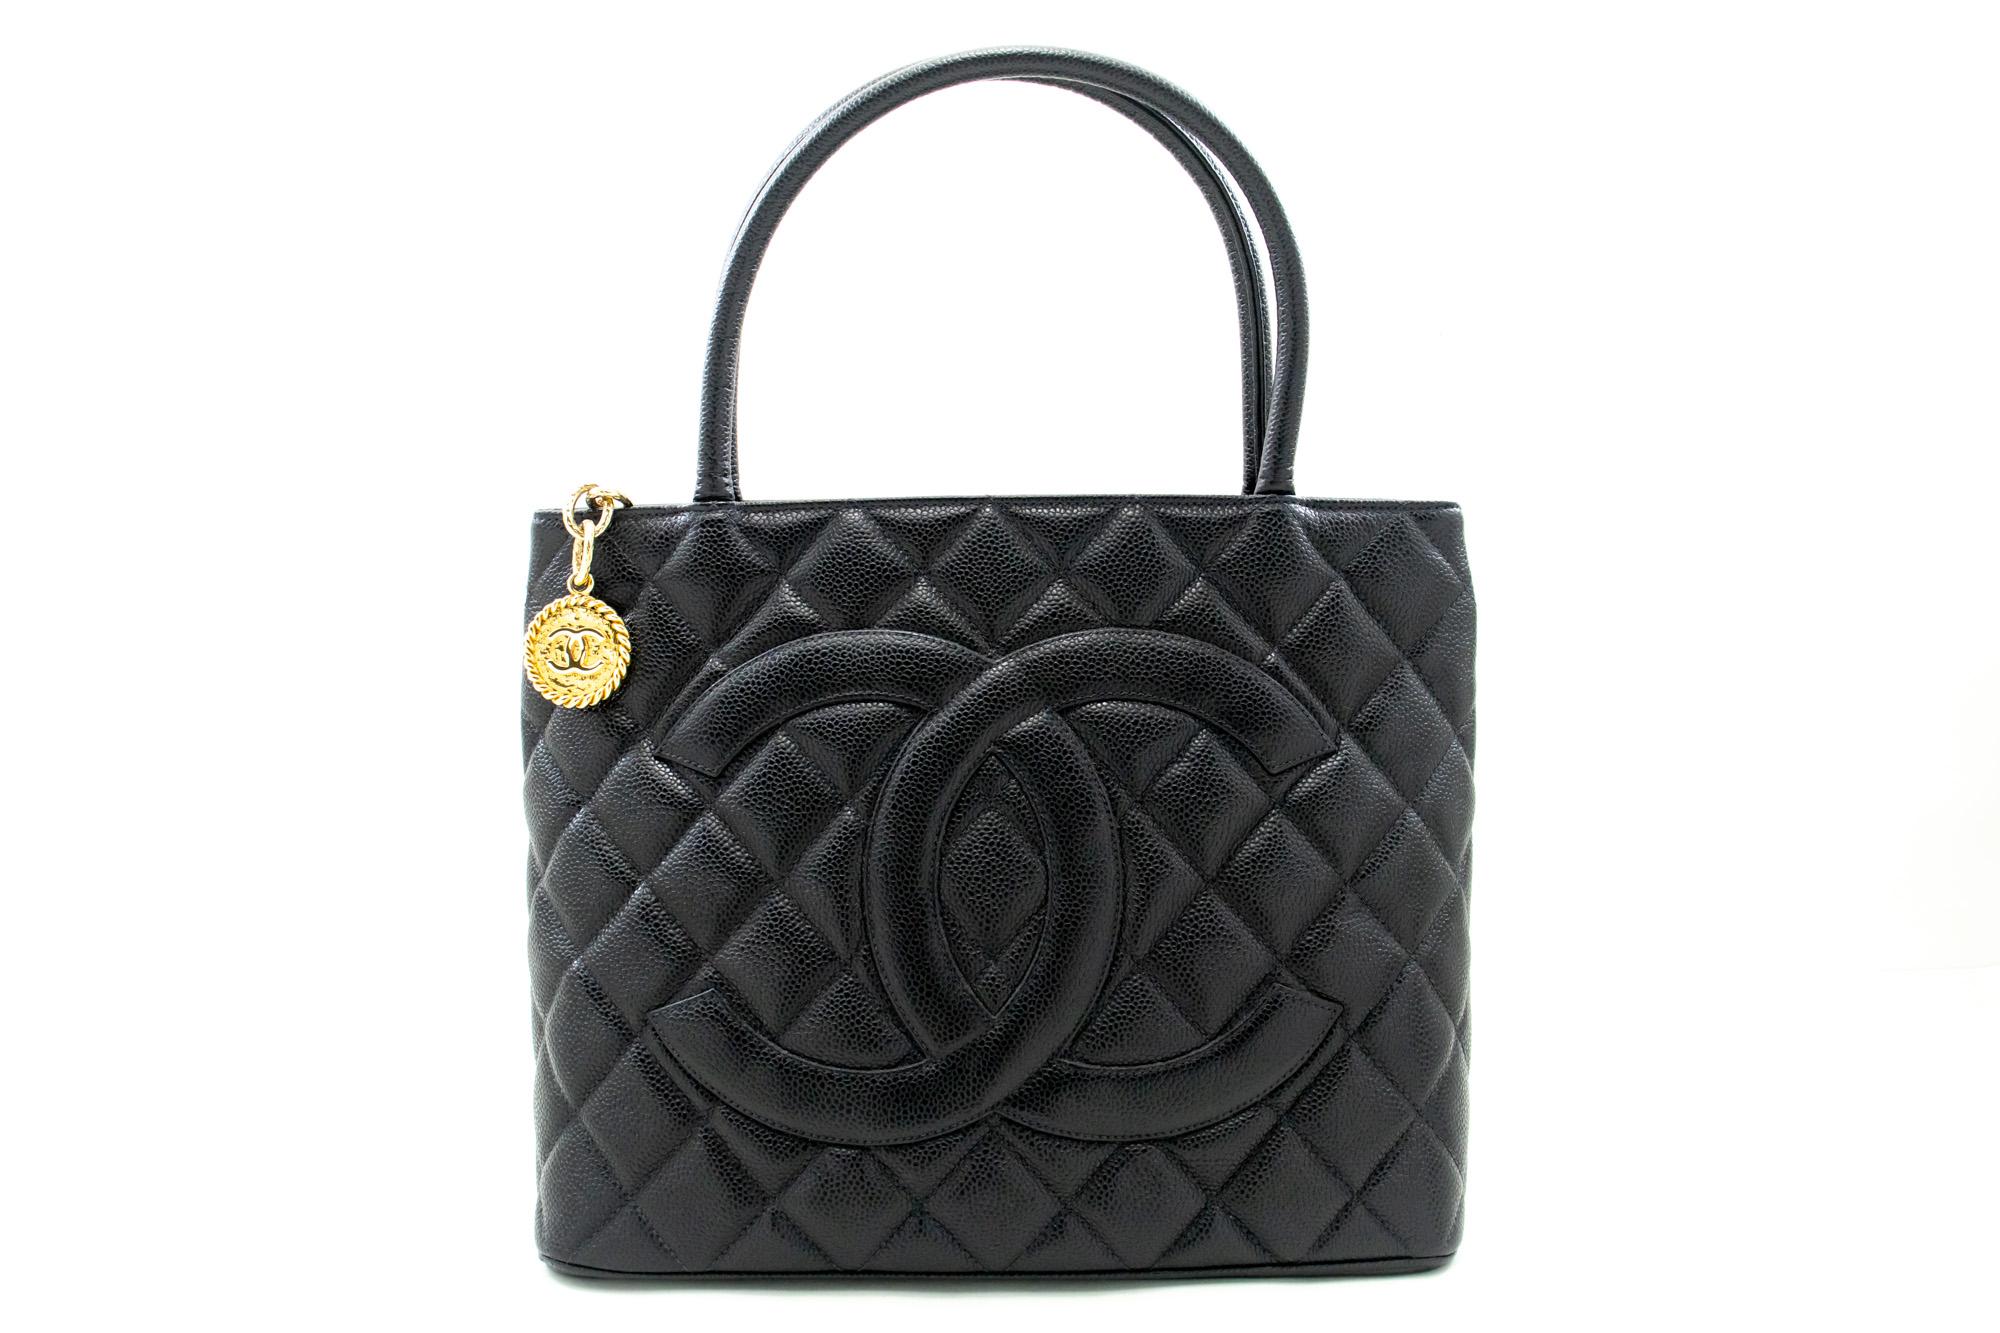 Un authentique Chanel Gold Medallion Caviar Shoulder Bag Grand Shopping Tote. La couleur est noire. Le matériau extérieur est le cuir. Le motif est solide. Cet article est un Vintage / Classique. L'année de fabrication serait 2 0 0 2 .
Conditions et